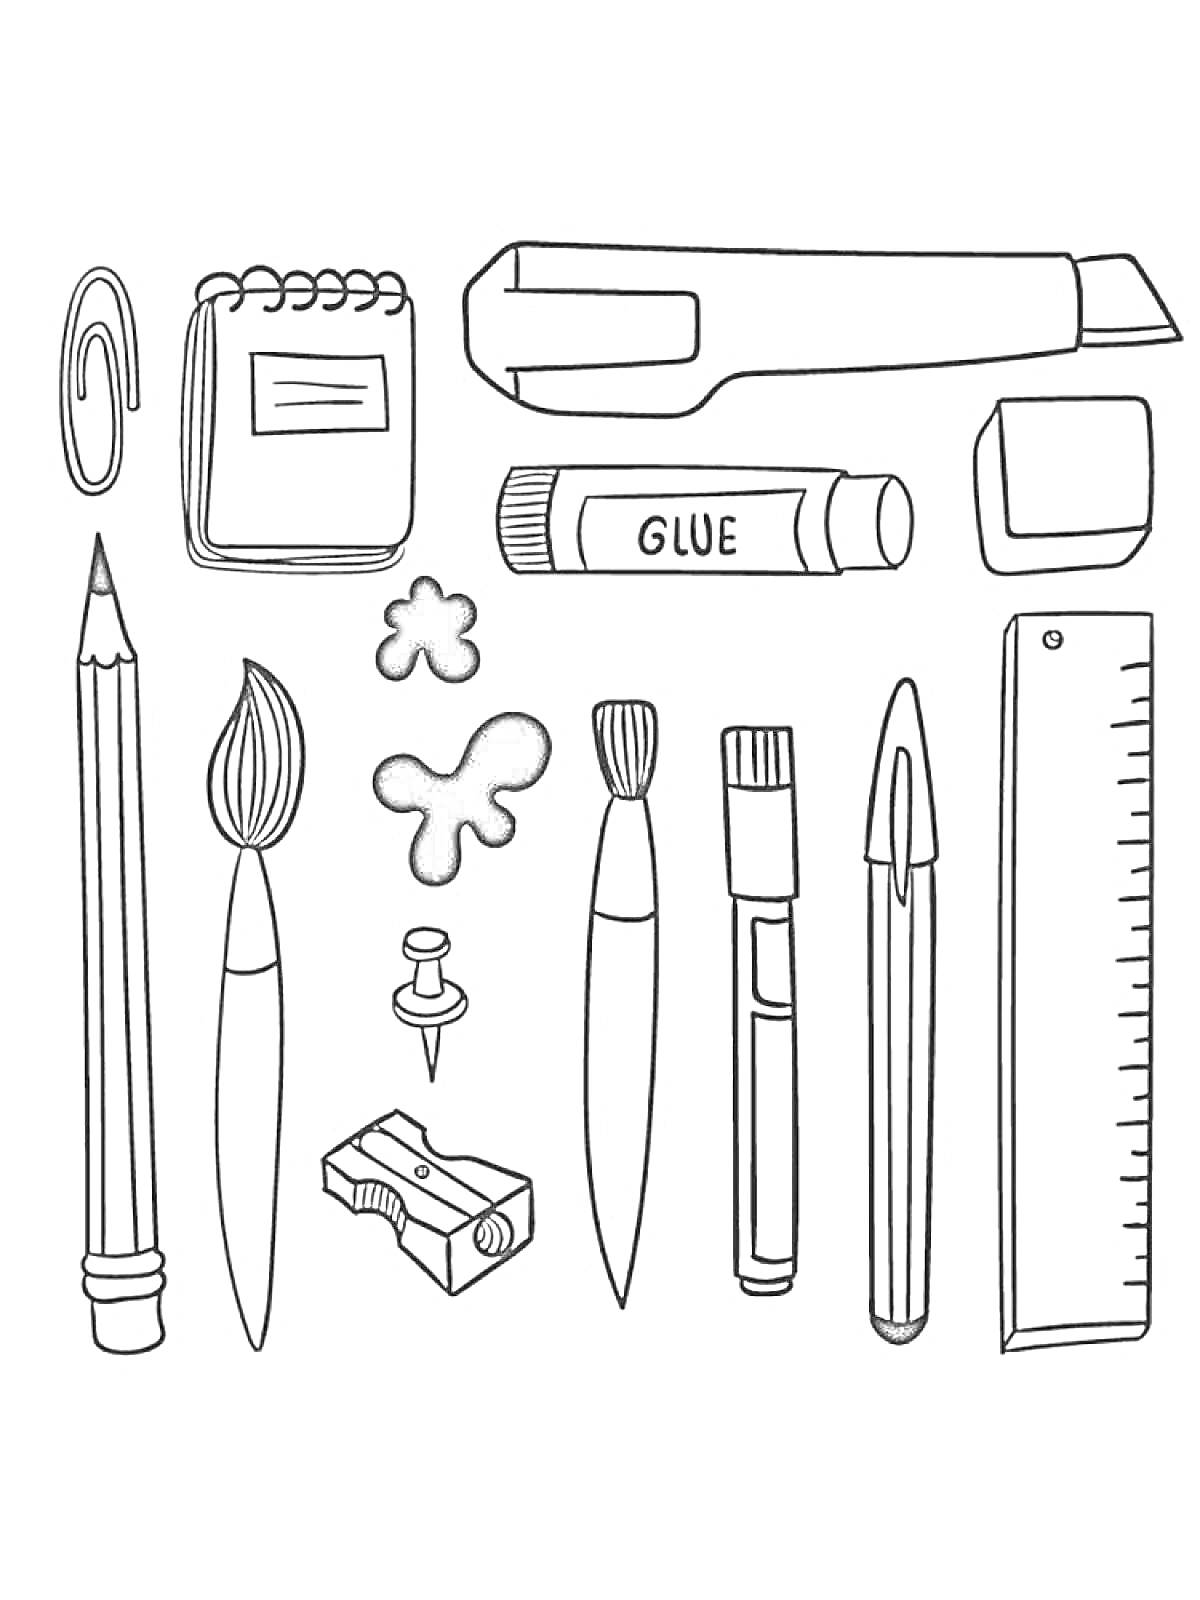 Раскраска Школьные принадлежности с канцелярским ножом, блокнотом, скрепкой, карандашом, кисточками, булавкой, точилкой, красочными пятнами, клеем, ластиком, линейкой и ручкой